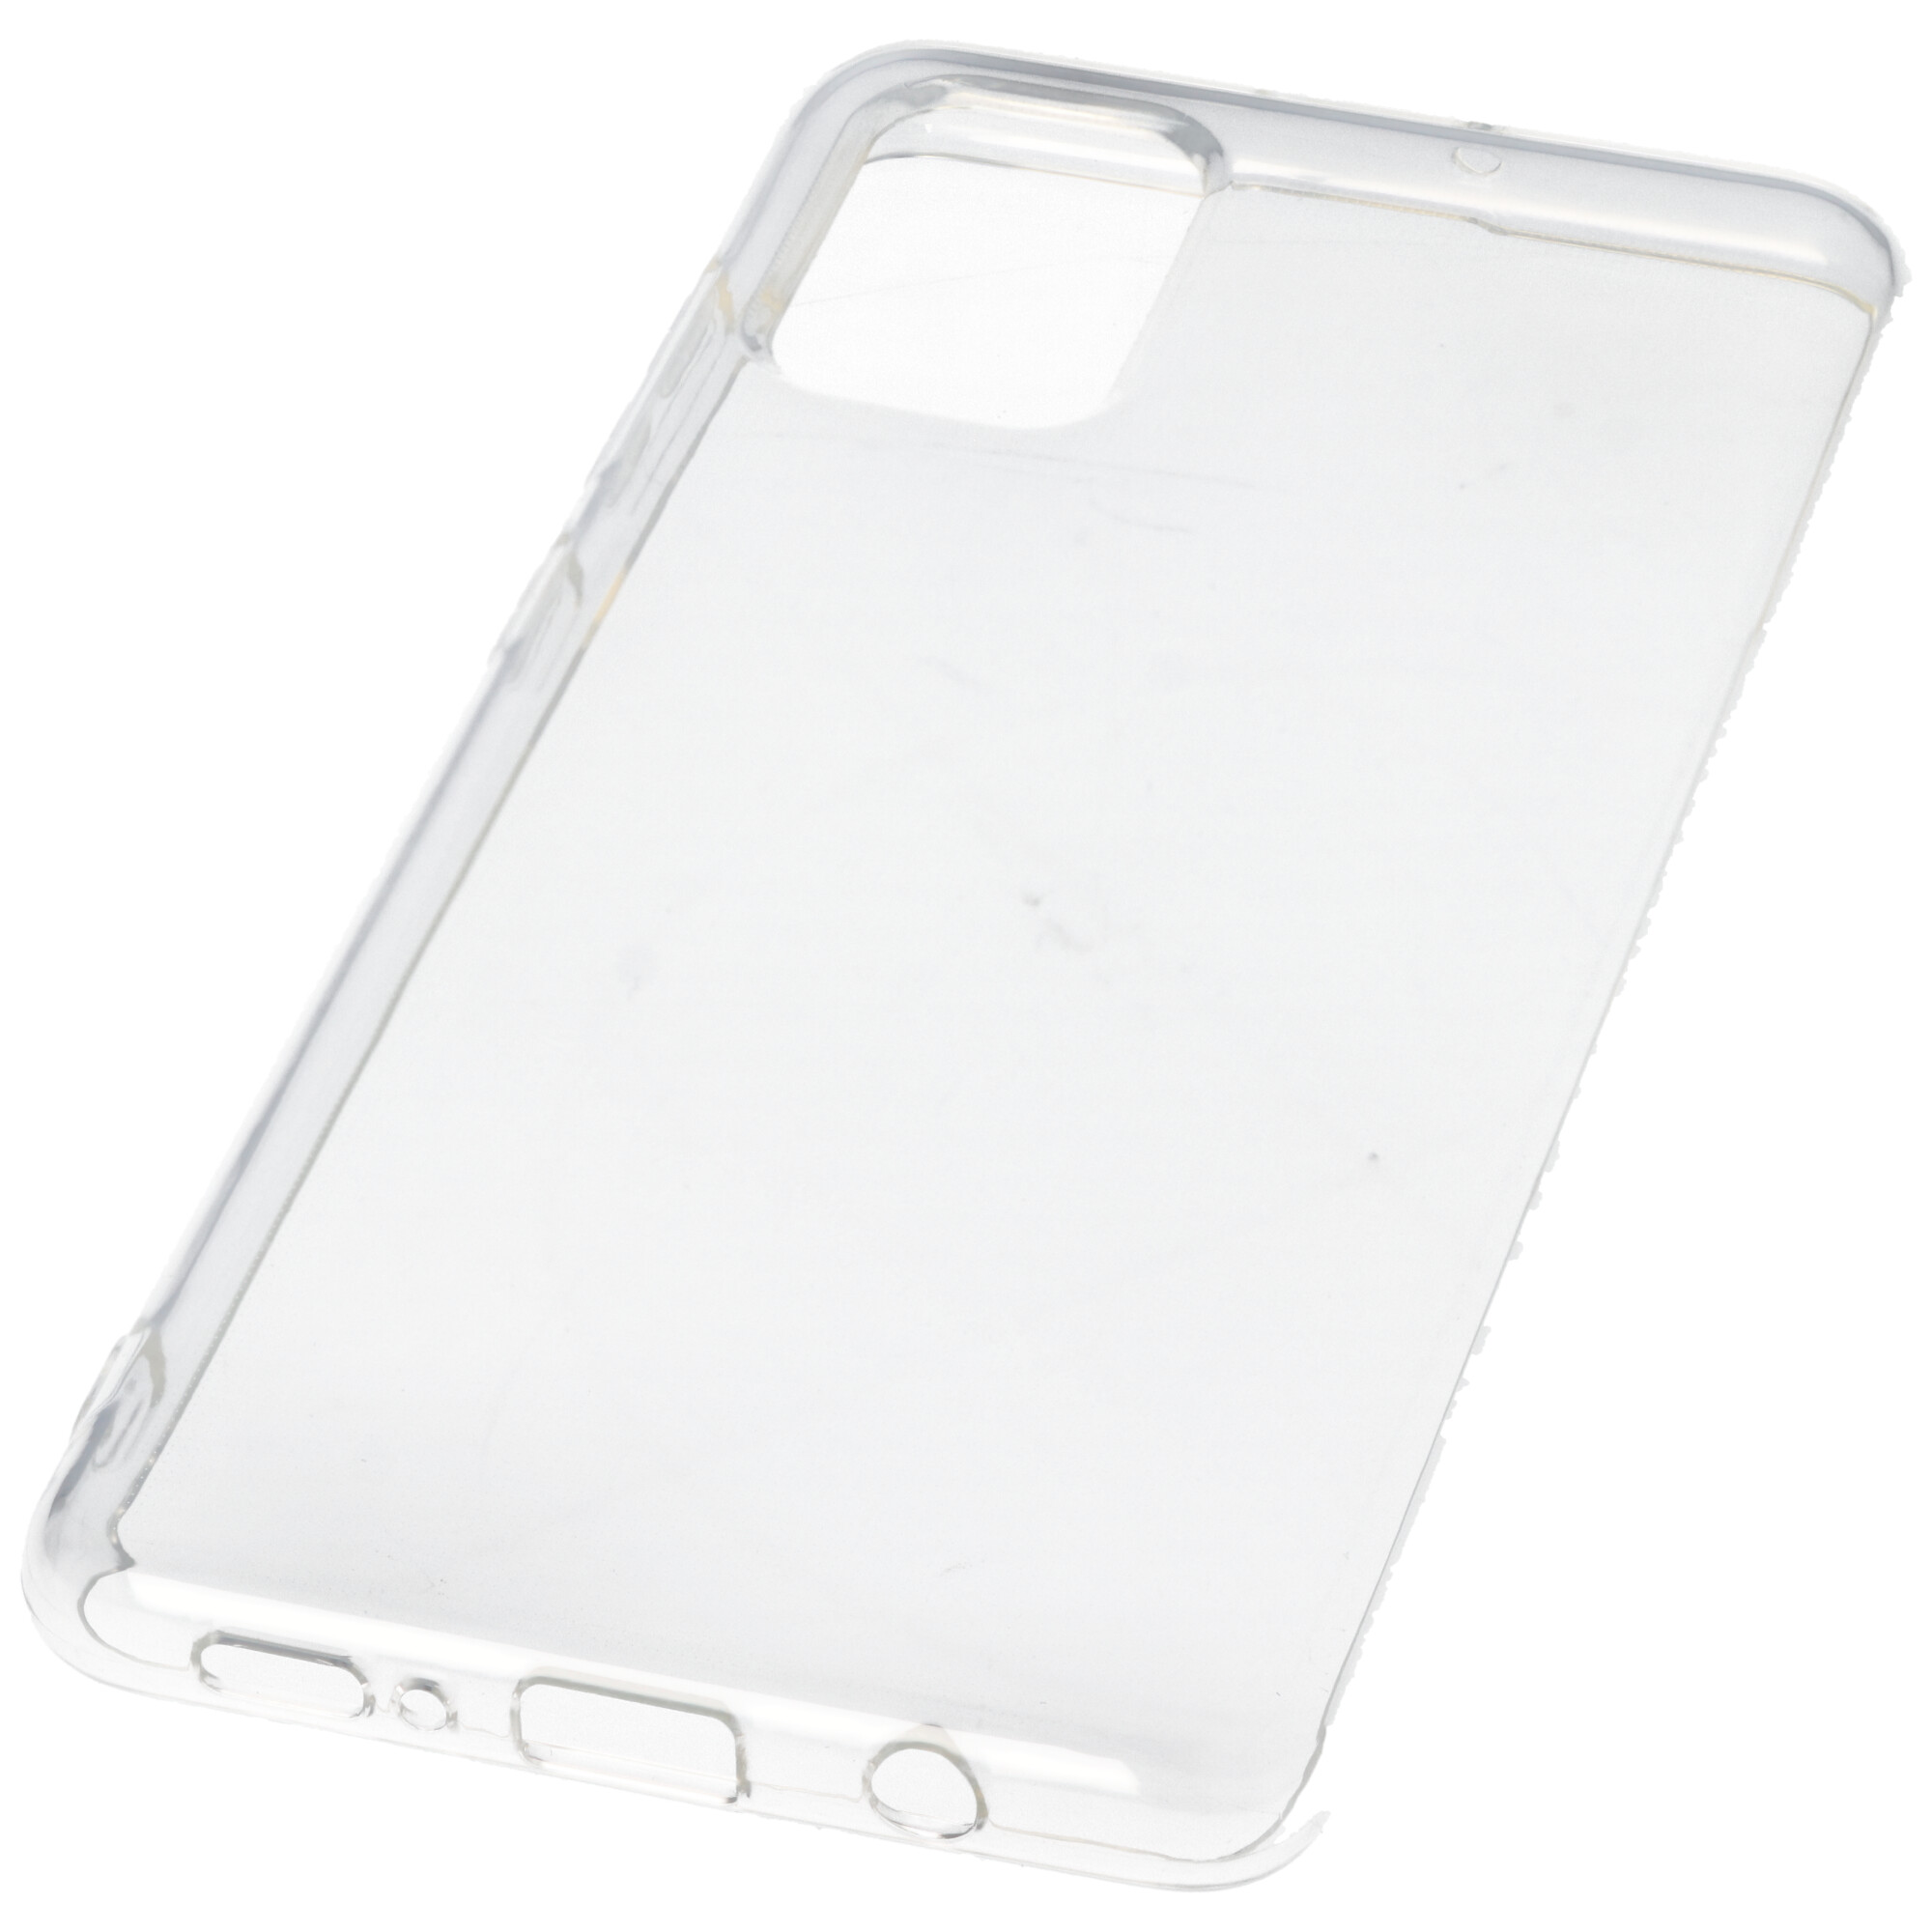 Hülle passend für Samsung Galaxy A71 - transparente Schutzhülle, Anti-Gelb Luftkissen Fallschutz Silikon Handyhülle robustes TPU Case